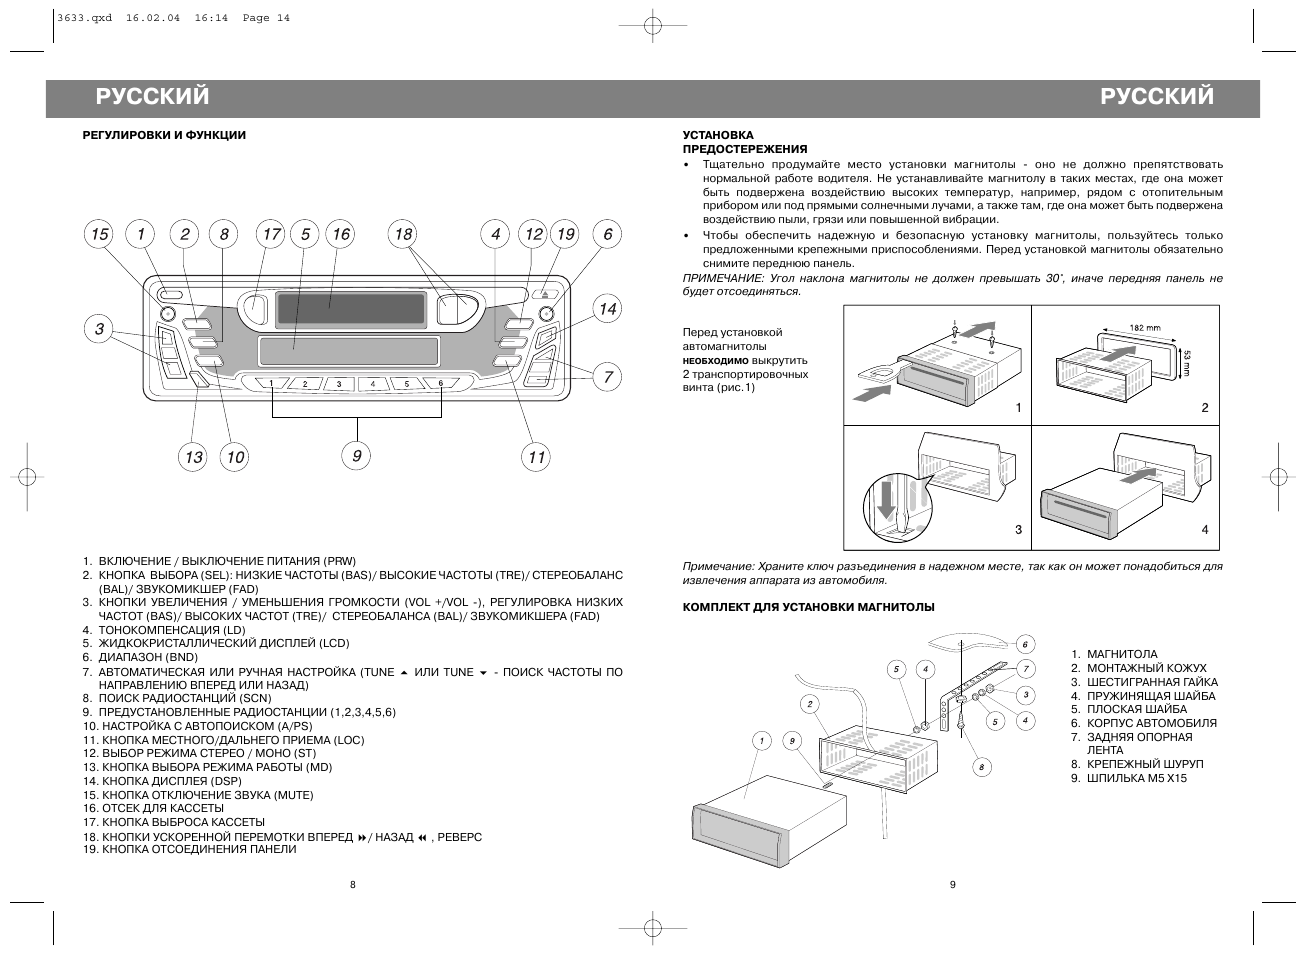 Автомагнитола lentel stc 1023u инструкция